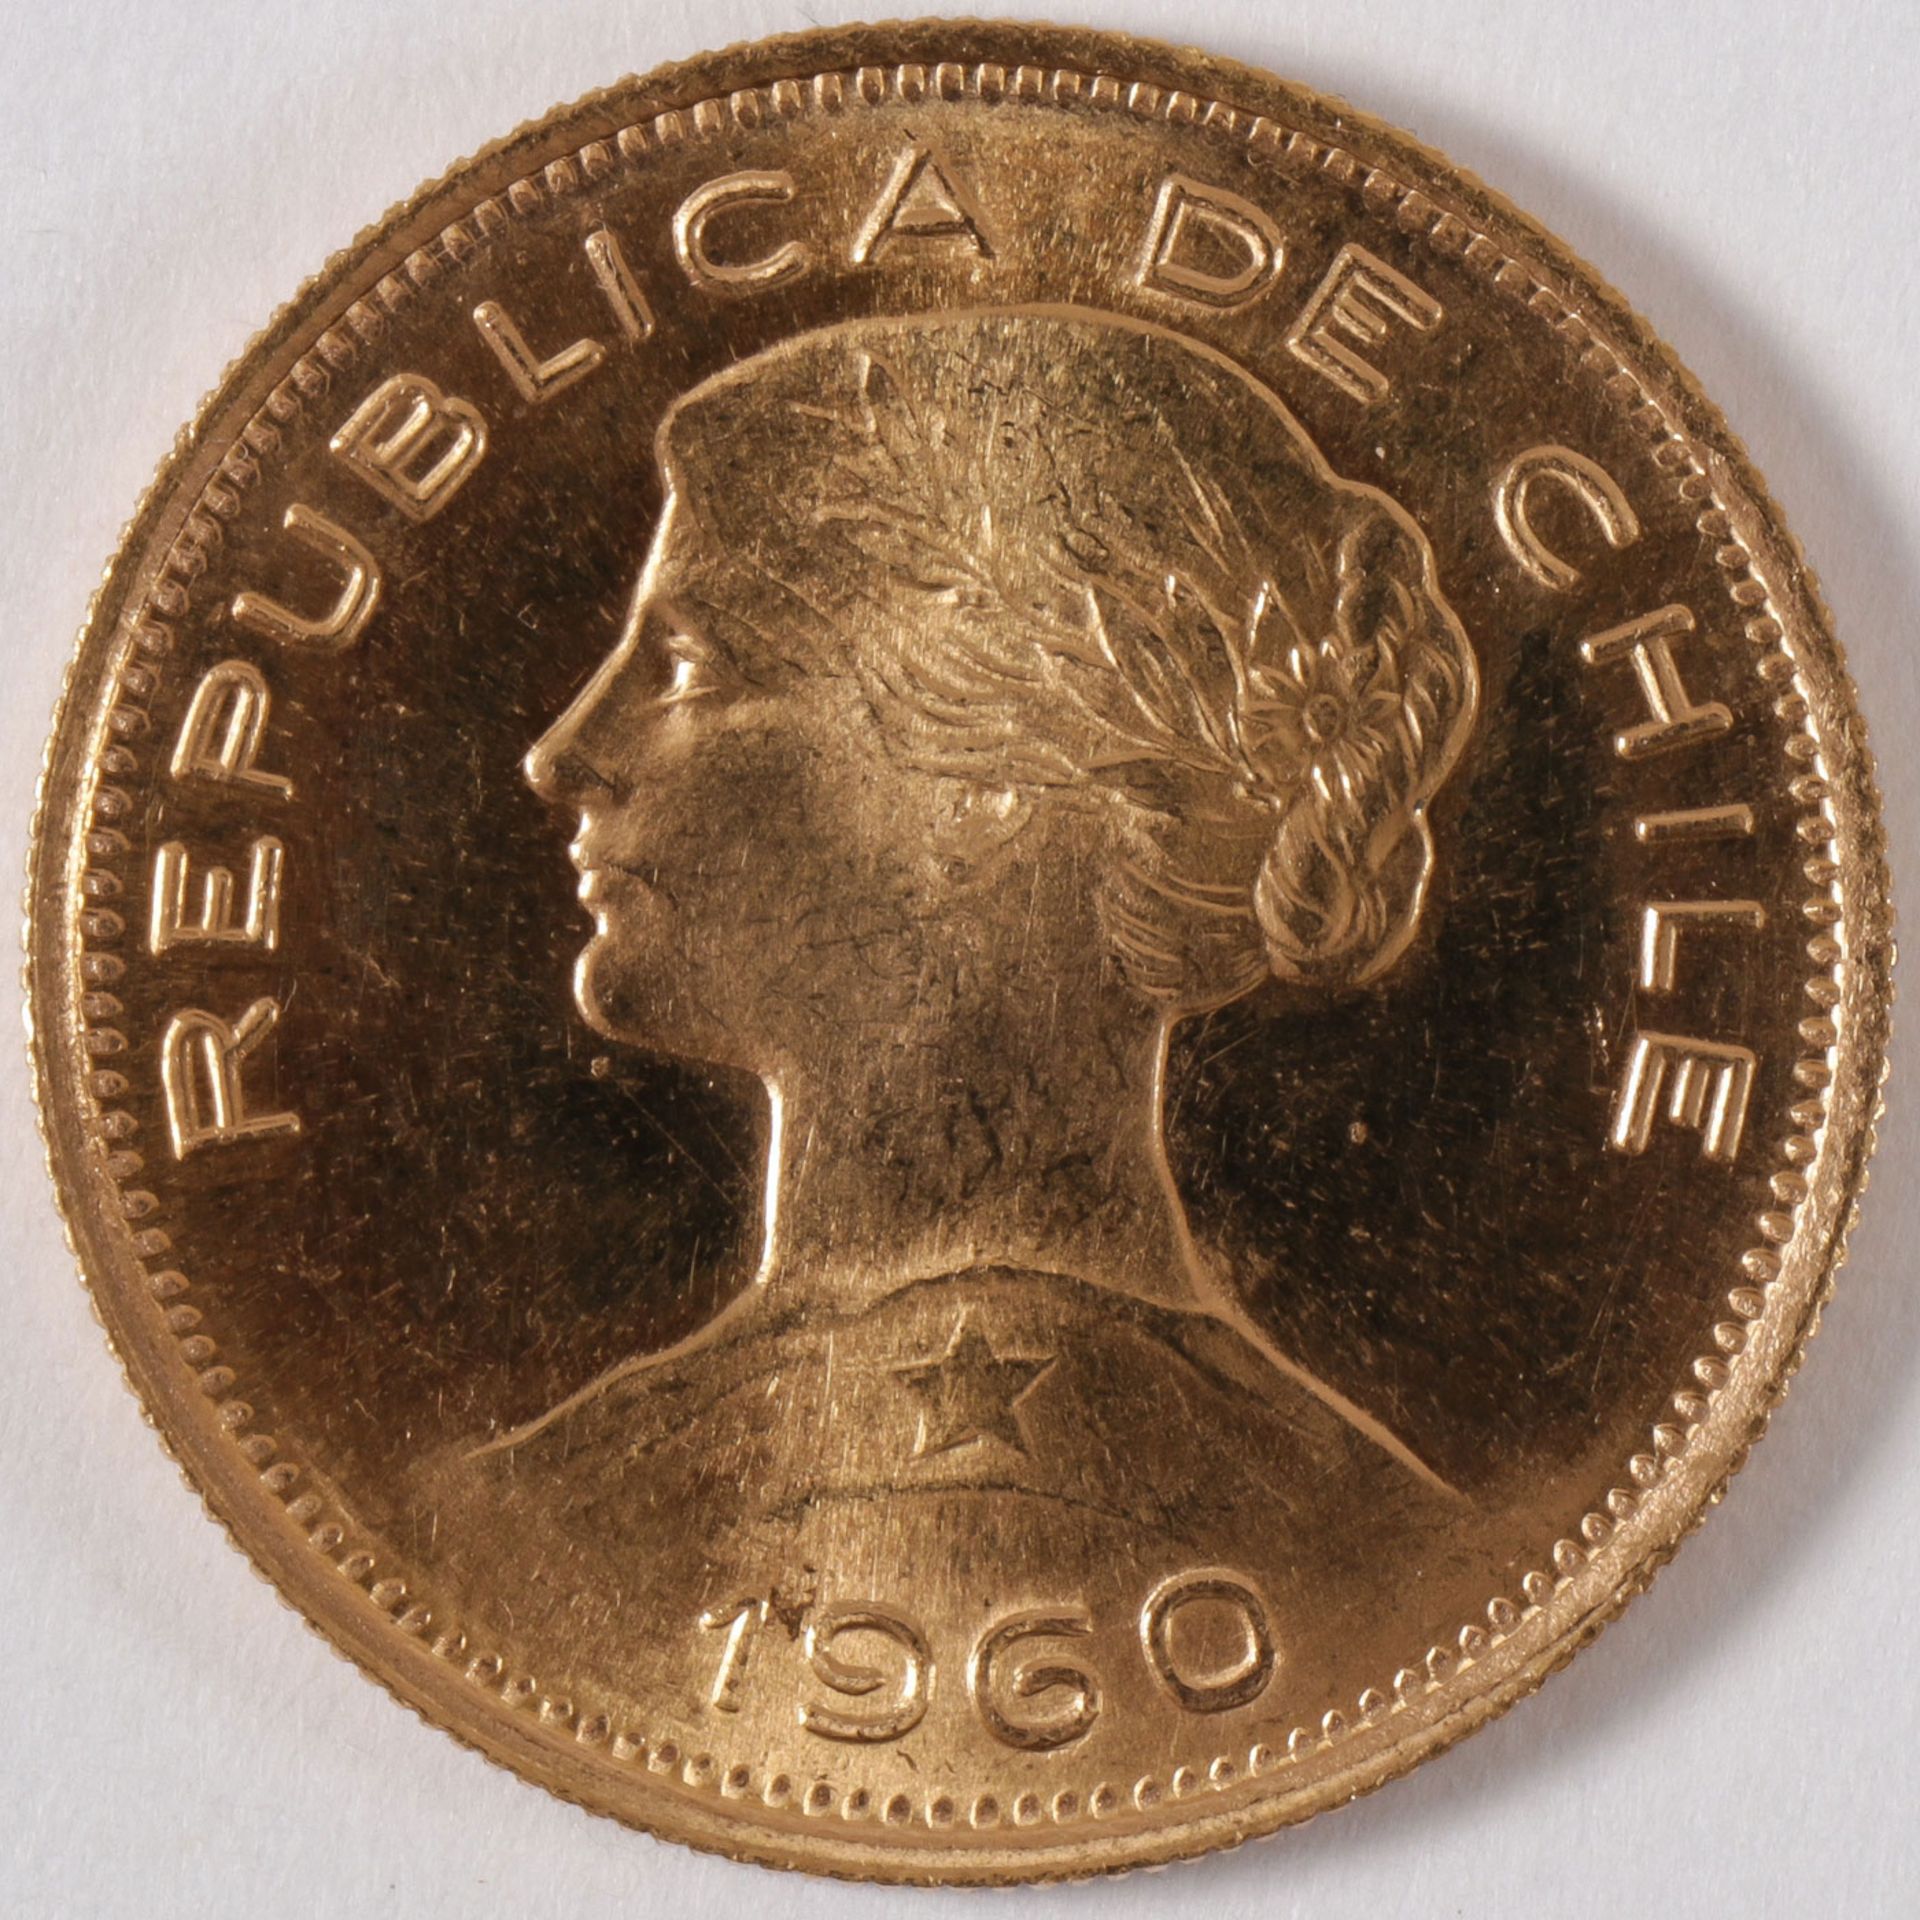 1960 CHILEAN 100 PESOS GOLD COIN